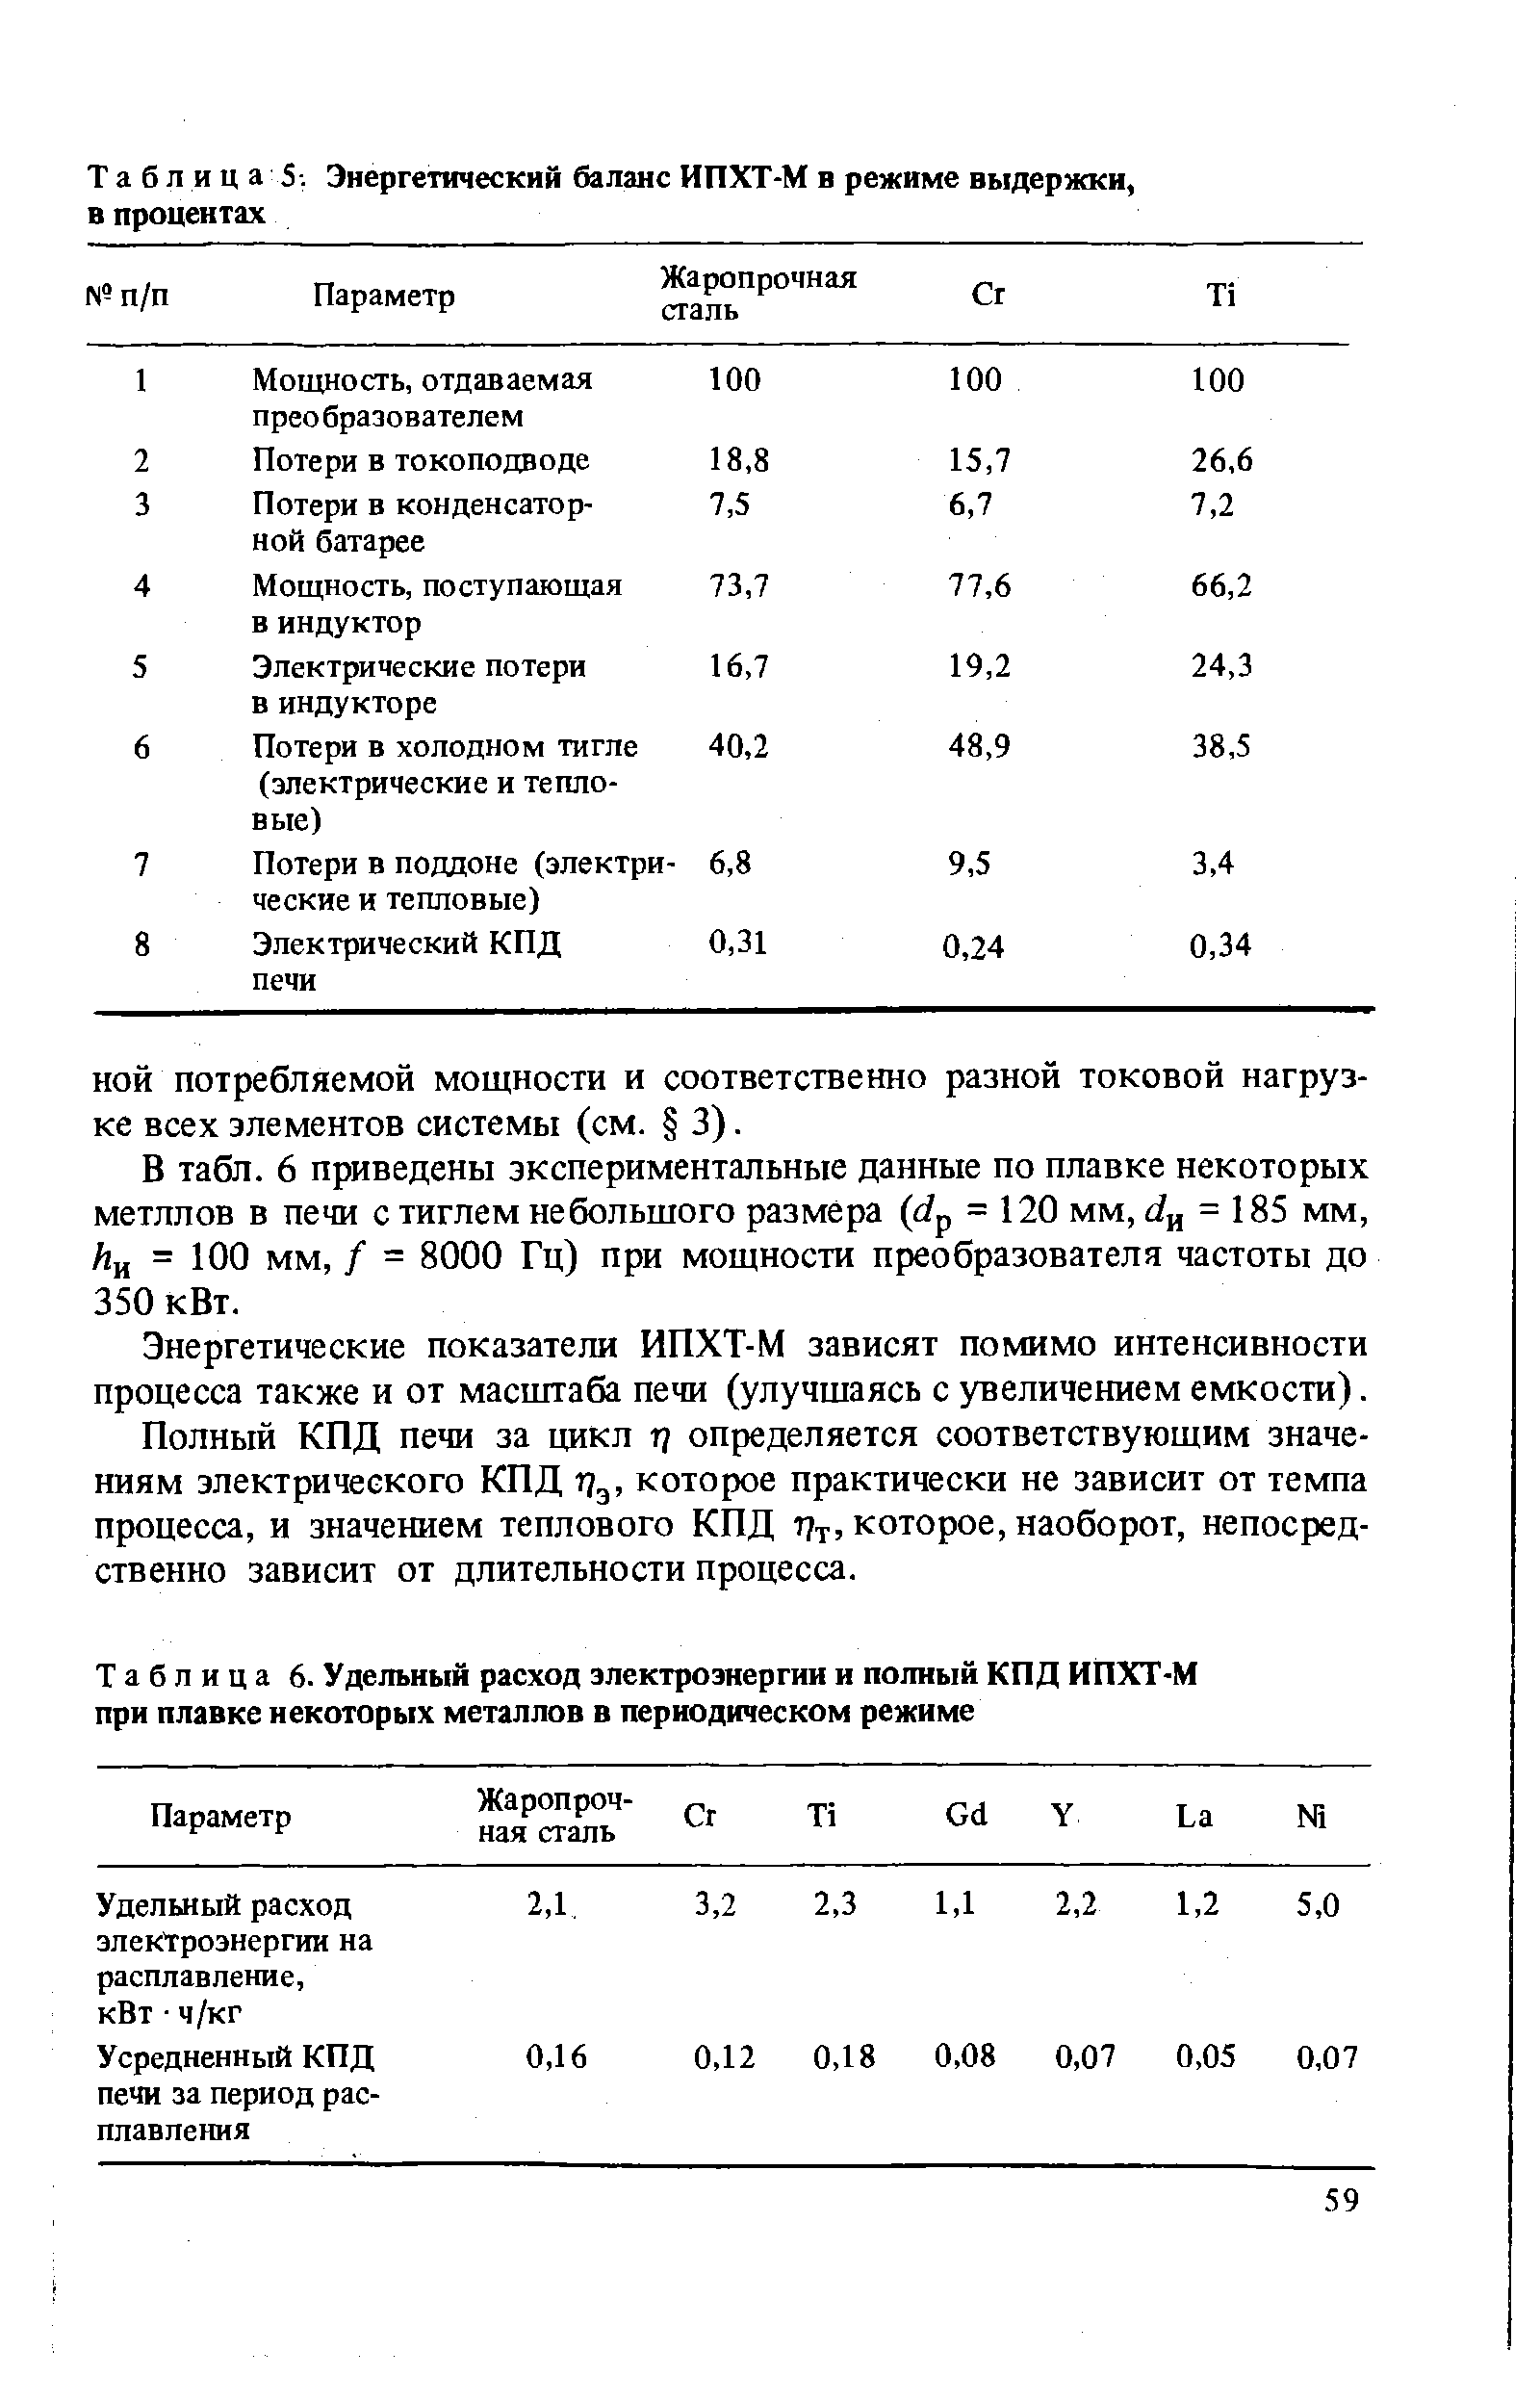 Таблица 6. Удельный расход электроэнергии и полный КПД ИПХТ-М при плавке некоторых металлов в периодическом режиме
